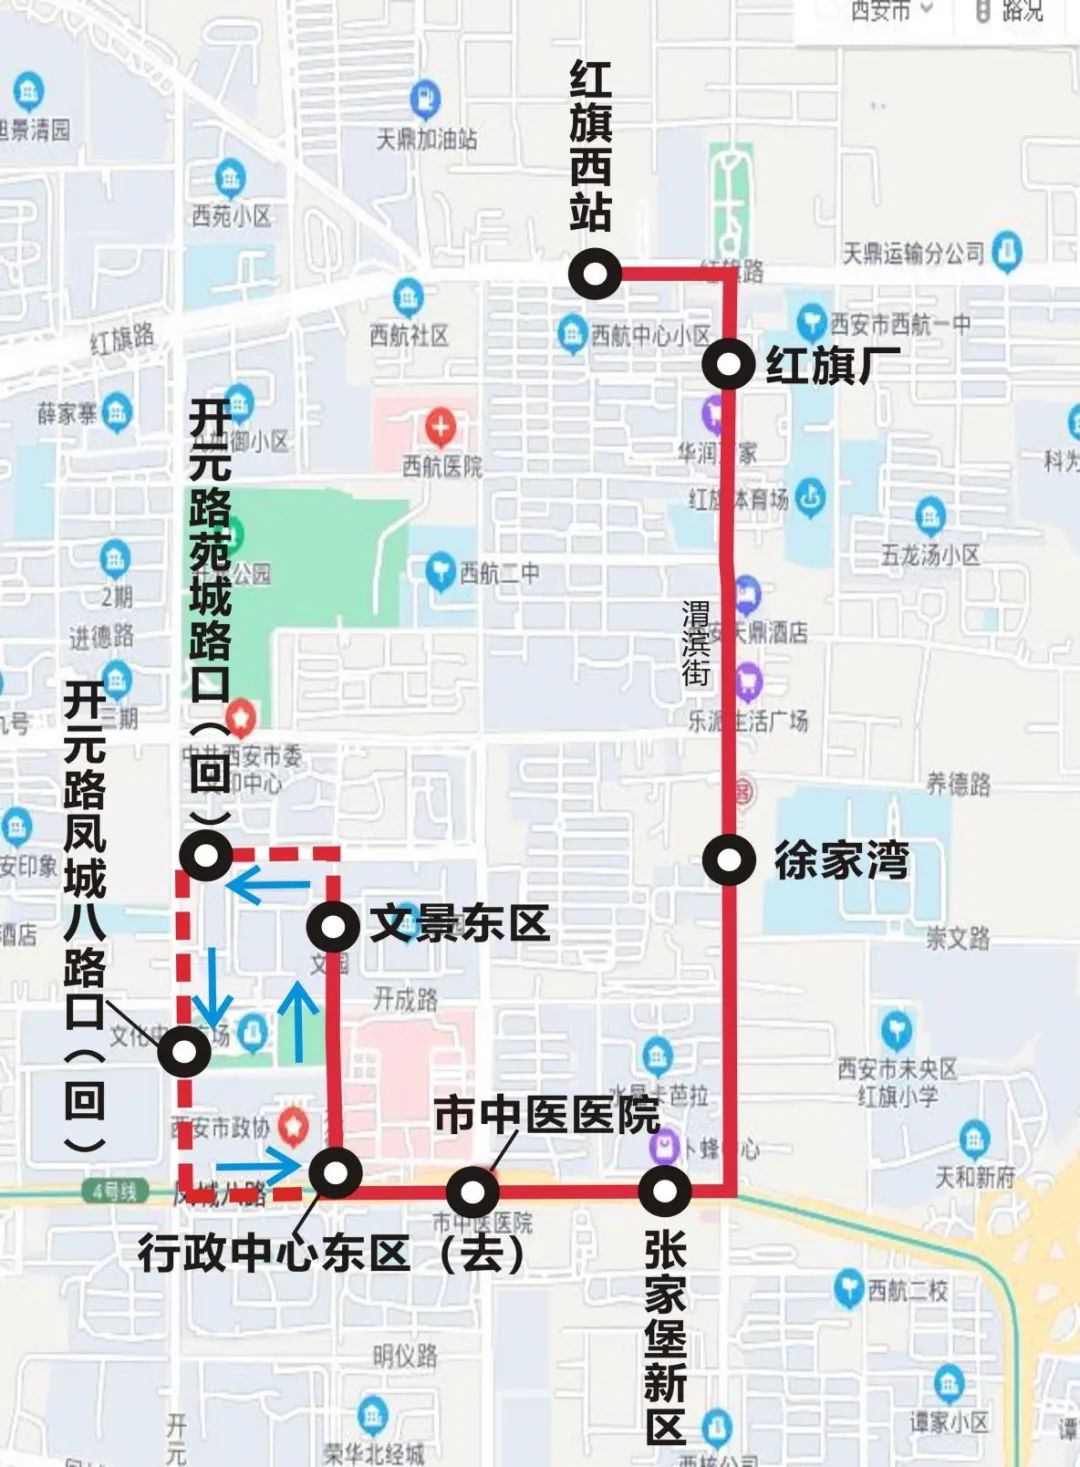 190路公交线路图图片